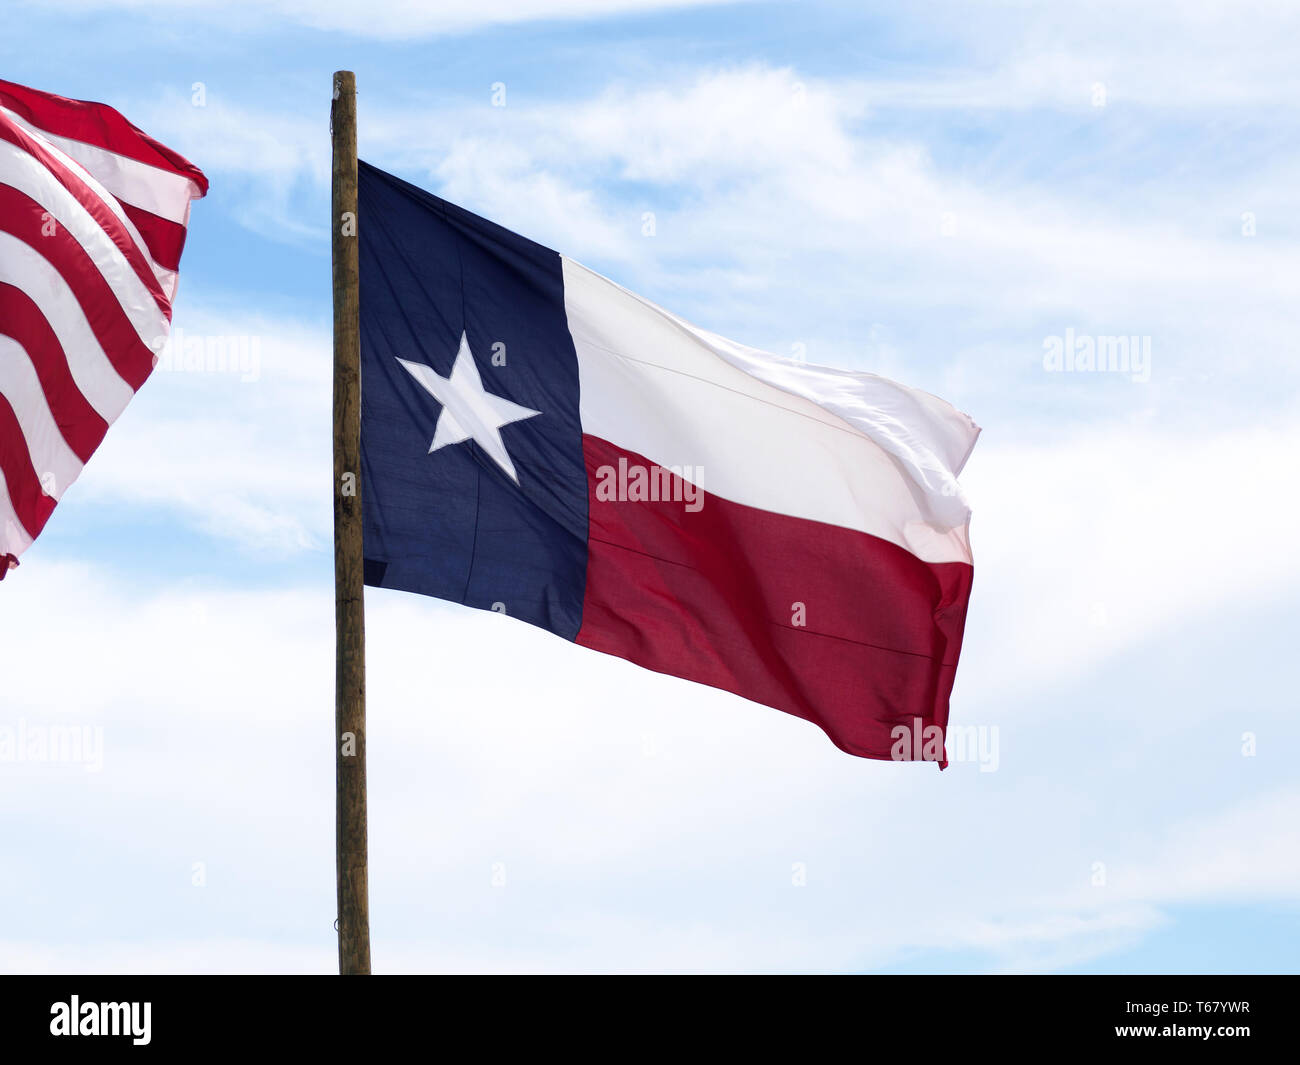 Das Texas State Flag oder 'Lone Star Flag", fliegt gegen den blauen Himmel mit weißen Wolken am2019 Texas Sandfest in Port Aransas, Texas USA. Stockfoto